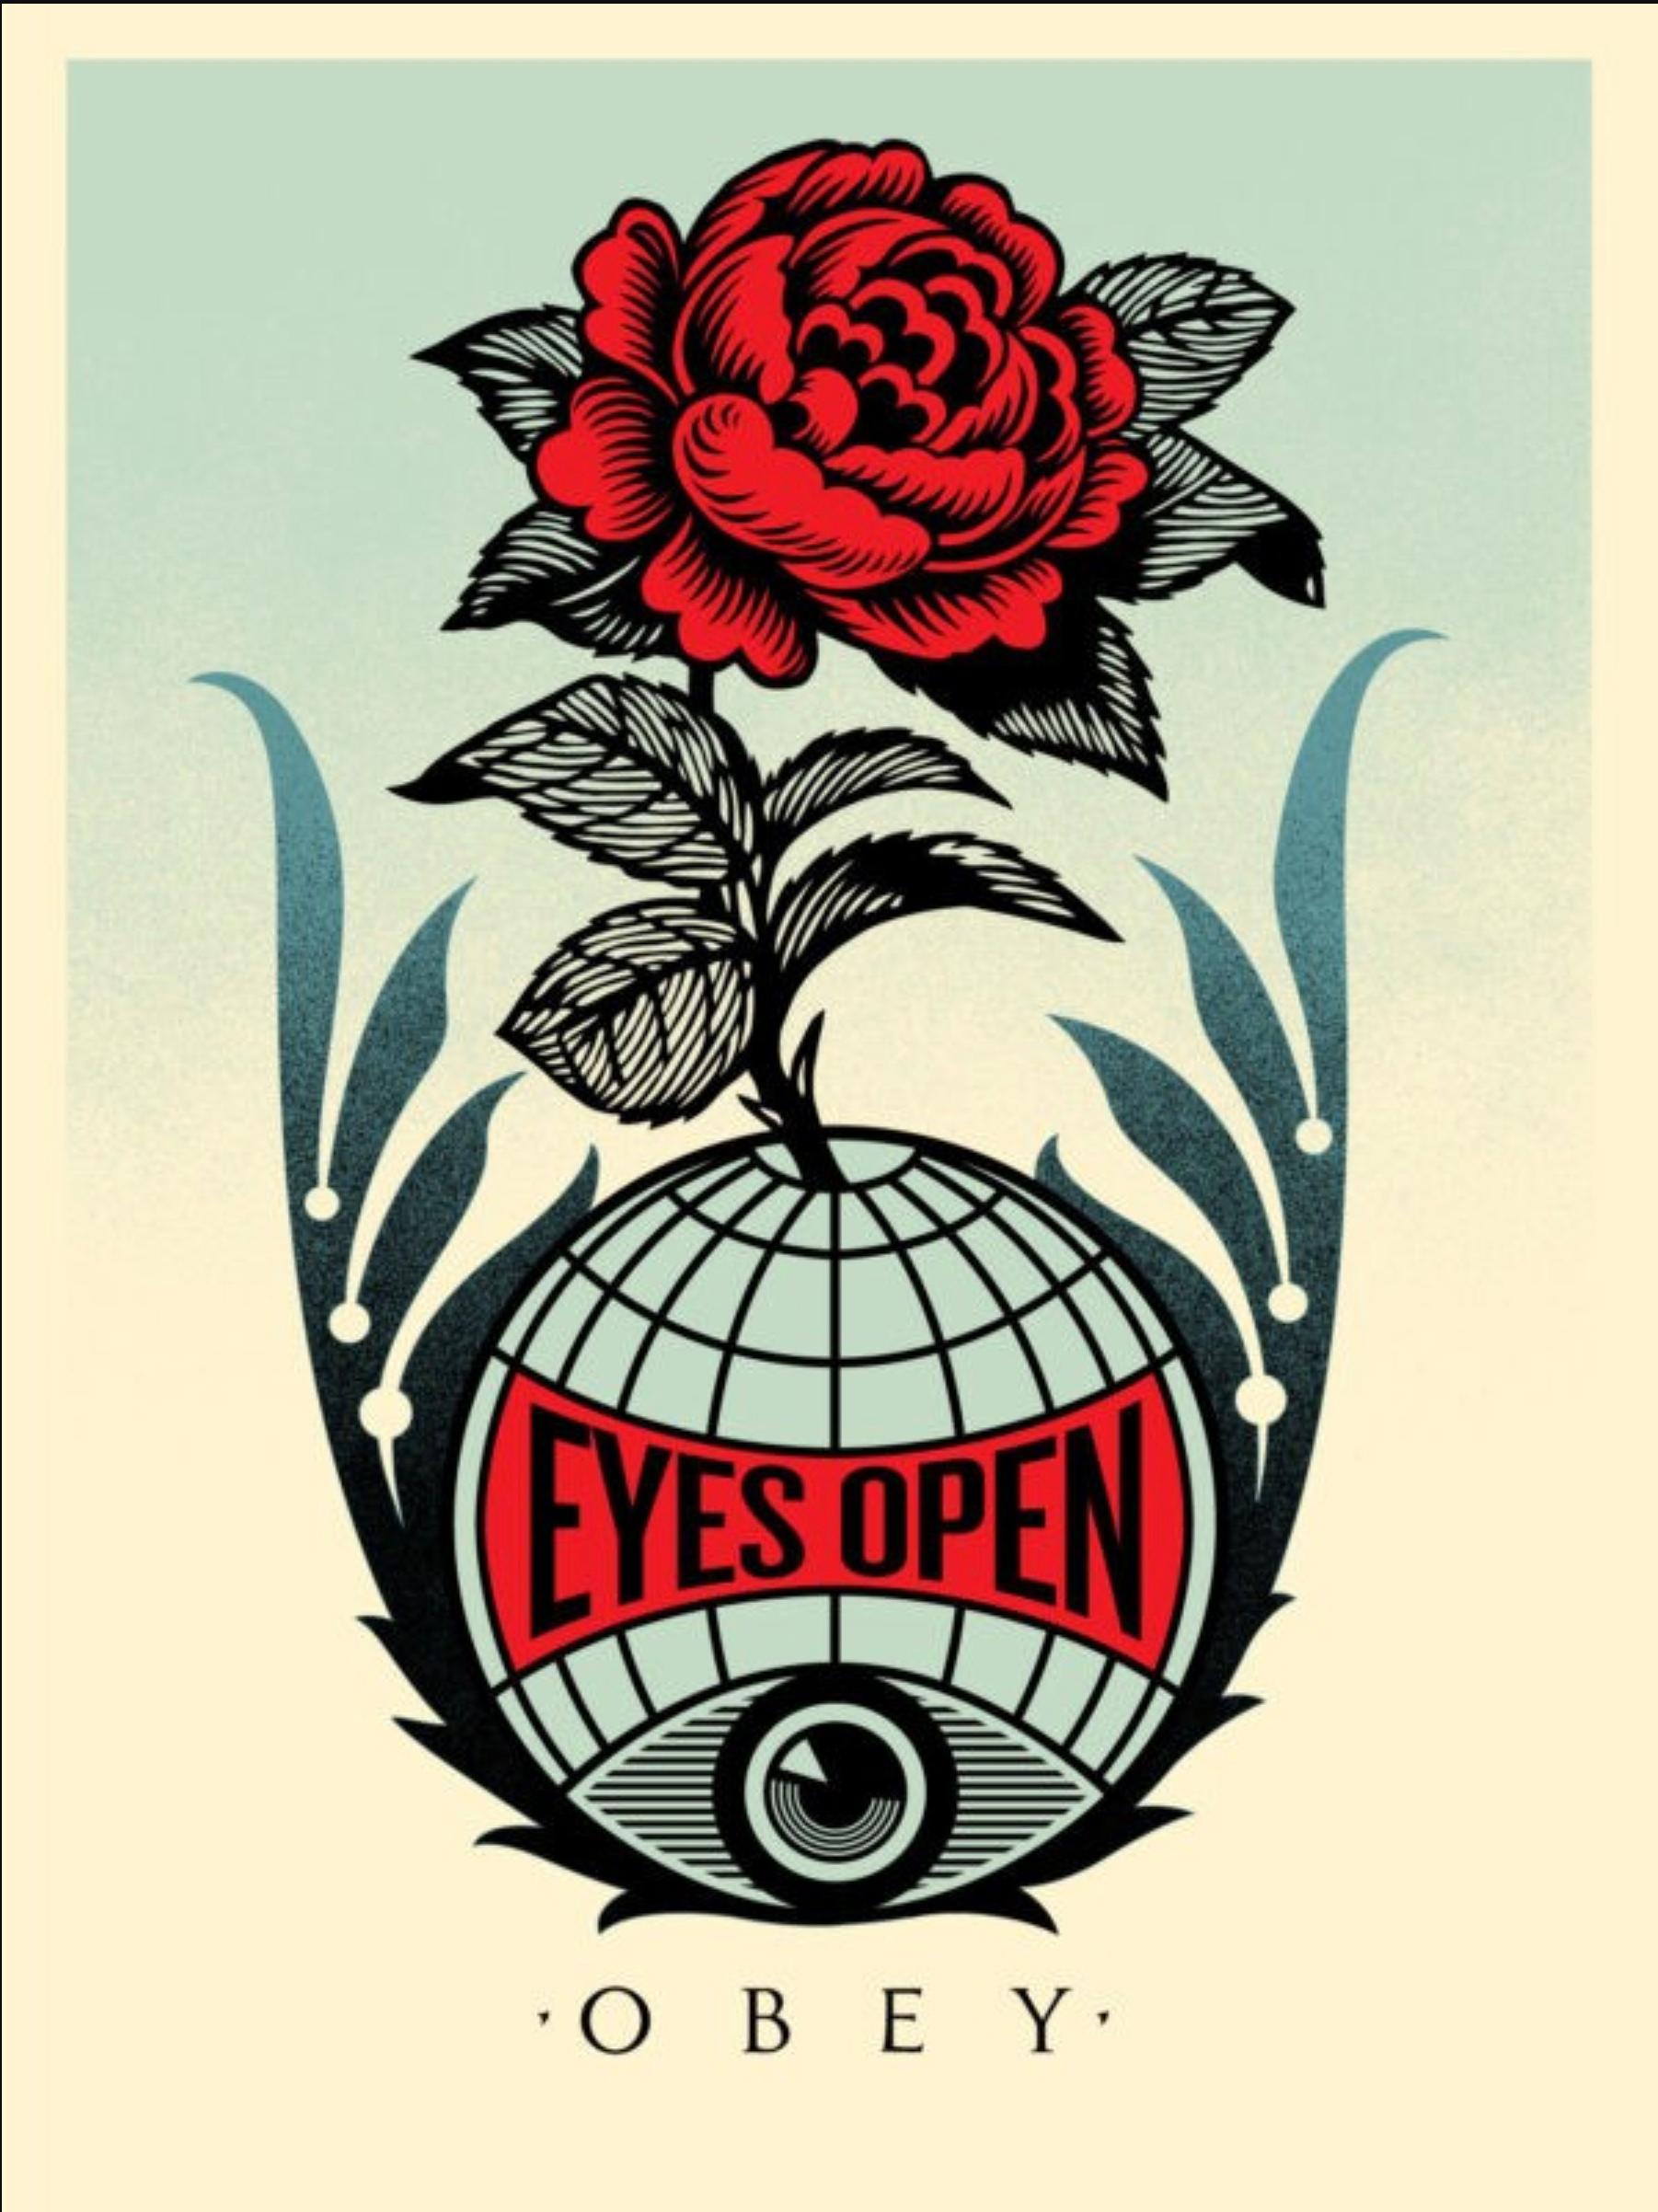 Offene Augen

"Dieser Siebdruck von Eyes Open ist der Nachfolger des Buchdrucks Wake Up, den ich im Sommer veröffentlicht habe. Ich denke, wenn sich der Staub nach den Wahlen gelegt hat und wir uns auf die Feiertage zubewegen, ist es wichtig, mit